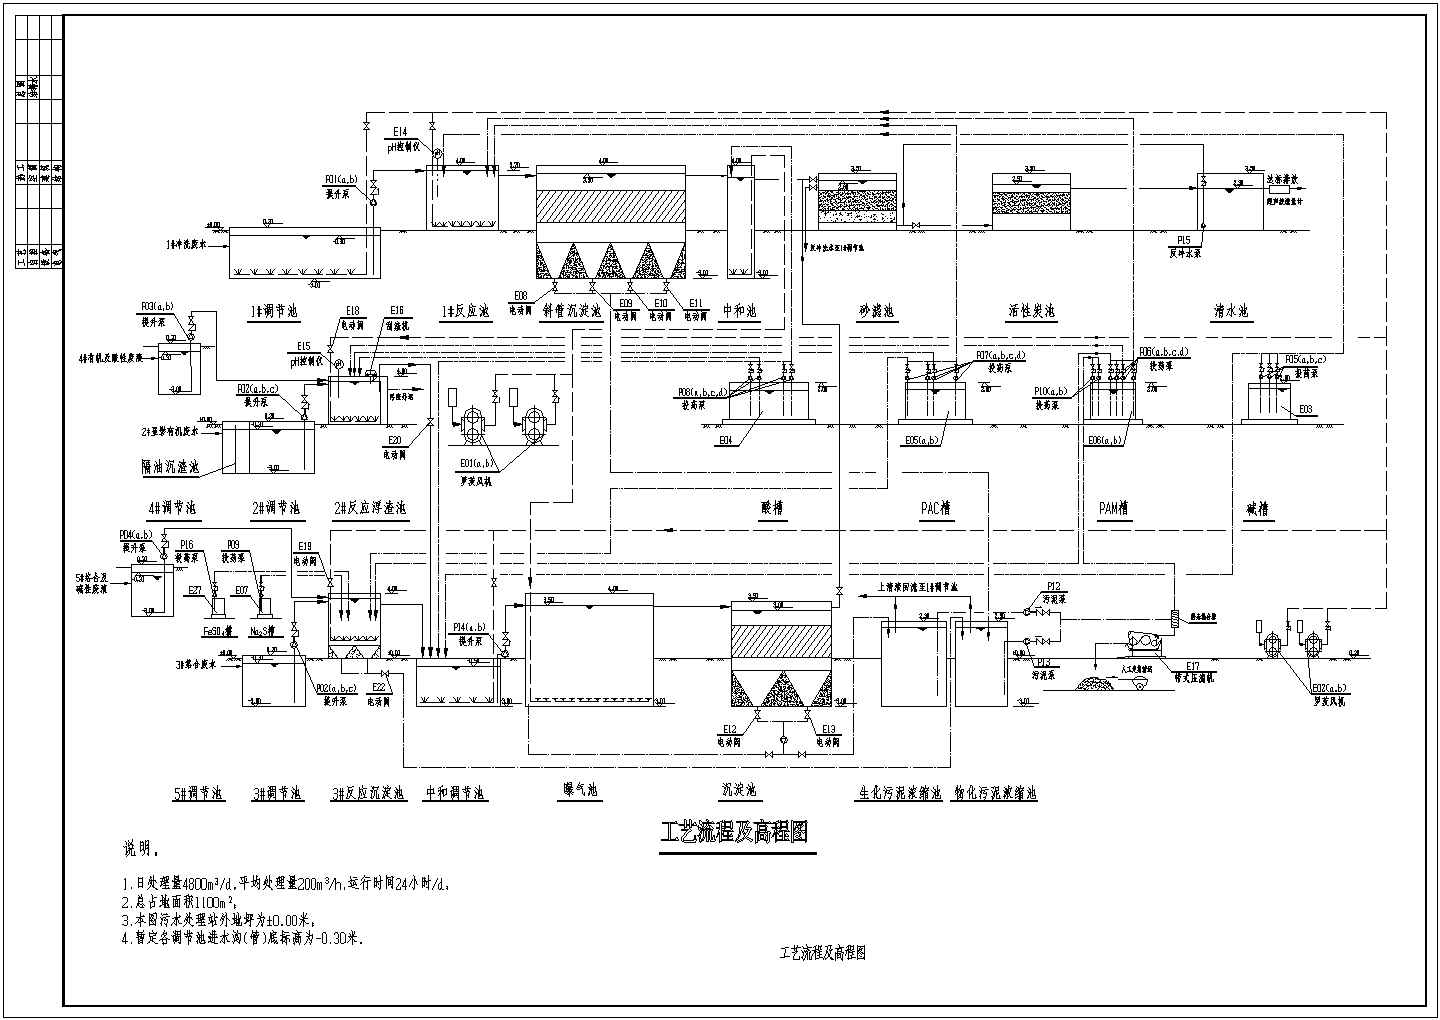 某印刷电路板厂污水水解酸化处理流程设计图